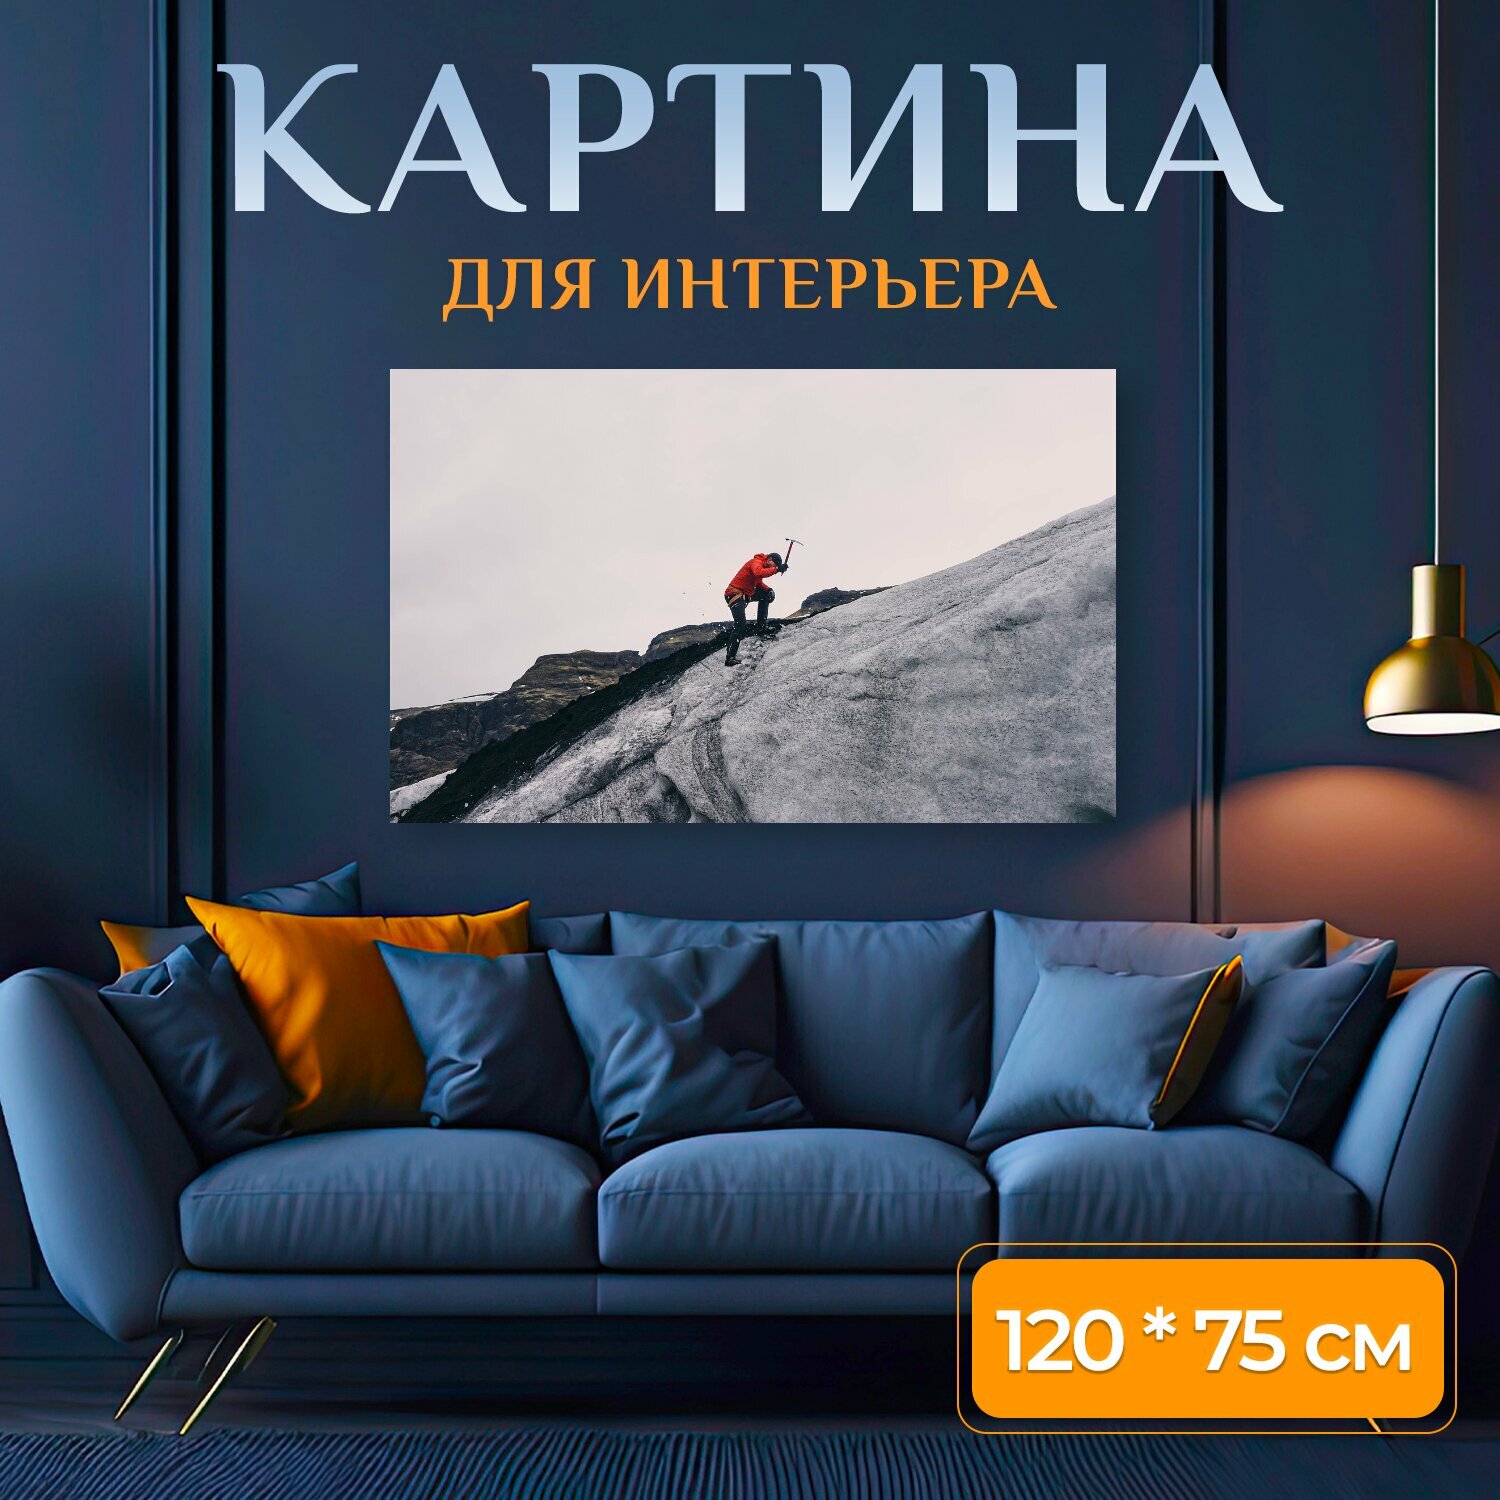 Картина на холсте "Альпинизм, альпинист, ледоруб" на подрамнике 120х75 см. для интерьера